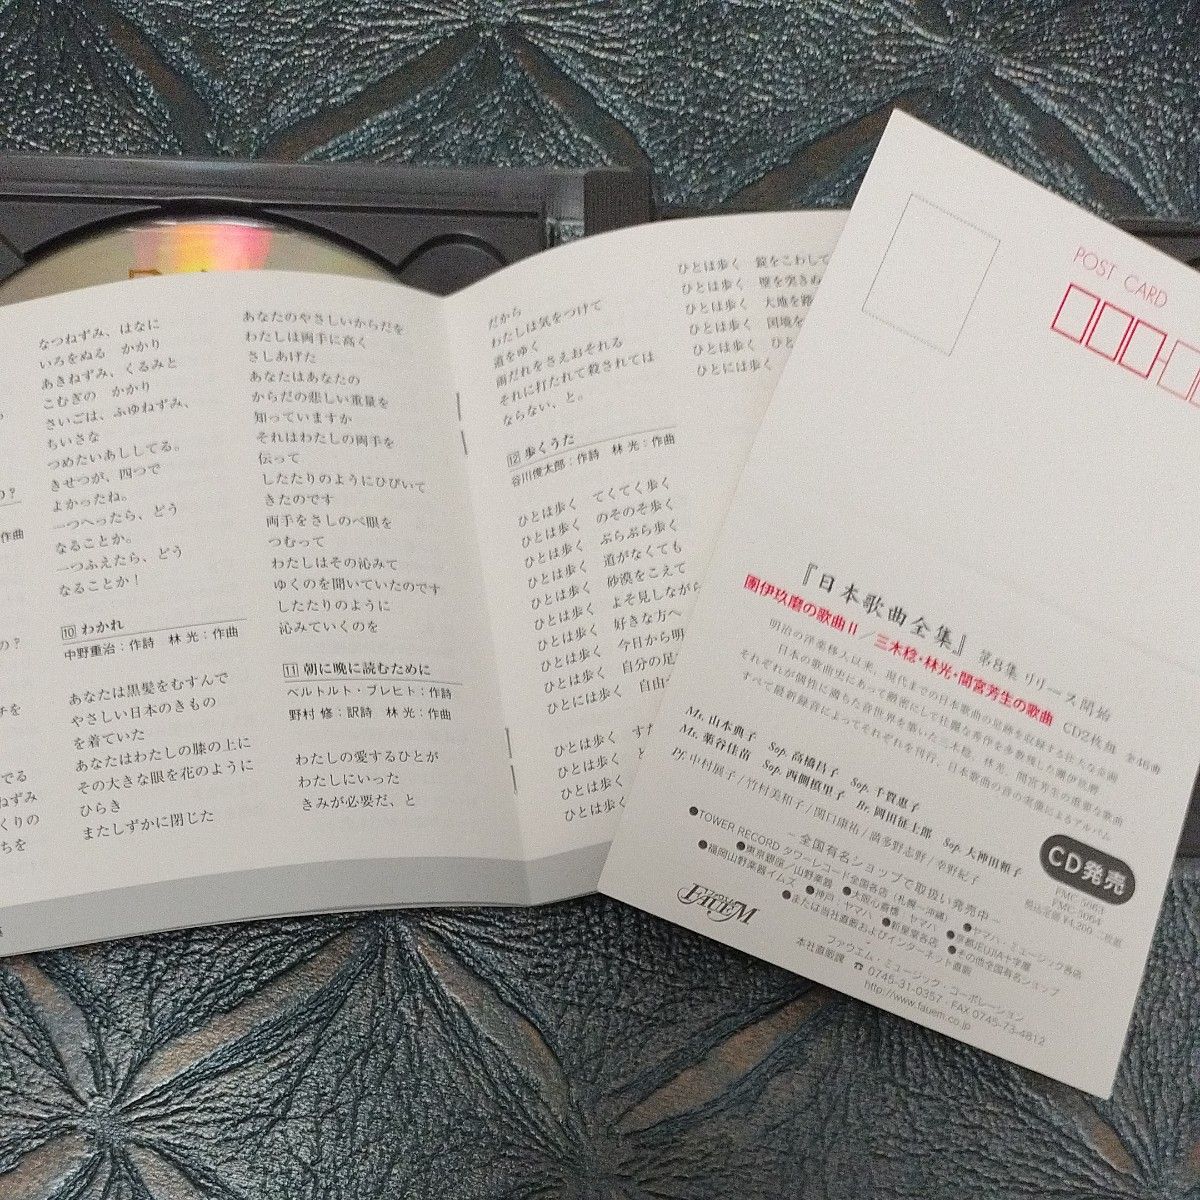 日本歌曲 第８集 團 伊玖磨の歌曲II / 三木 稔の歌曲・林 光の歌曲・間宮芳生の歌曲【2CD】